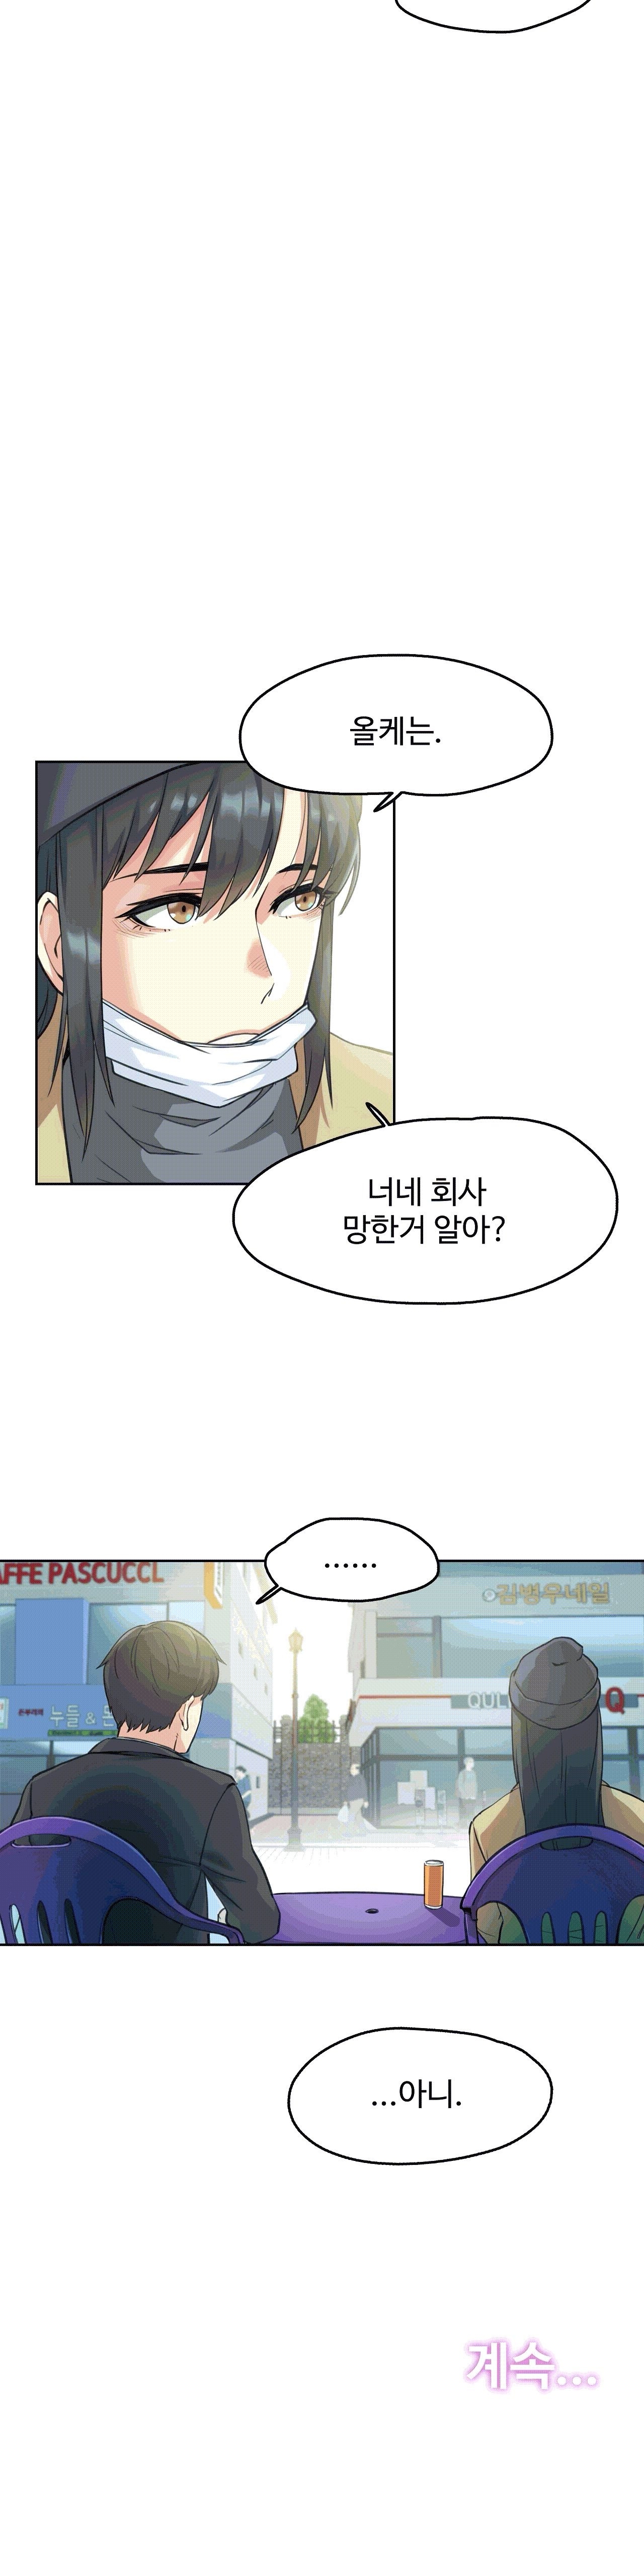 대리 부 | Surrogate Father 6 [Korean] Manhwa 27